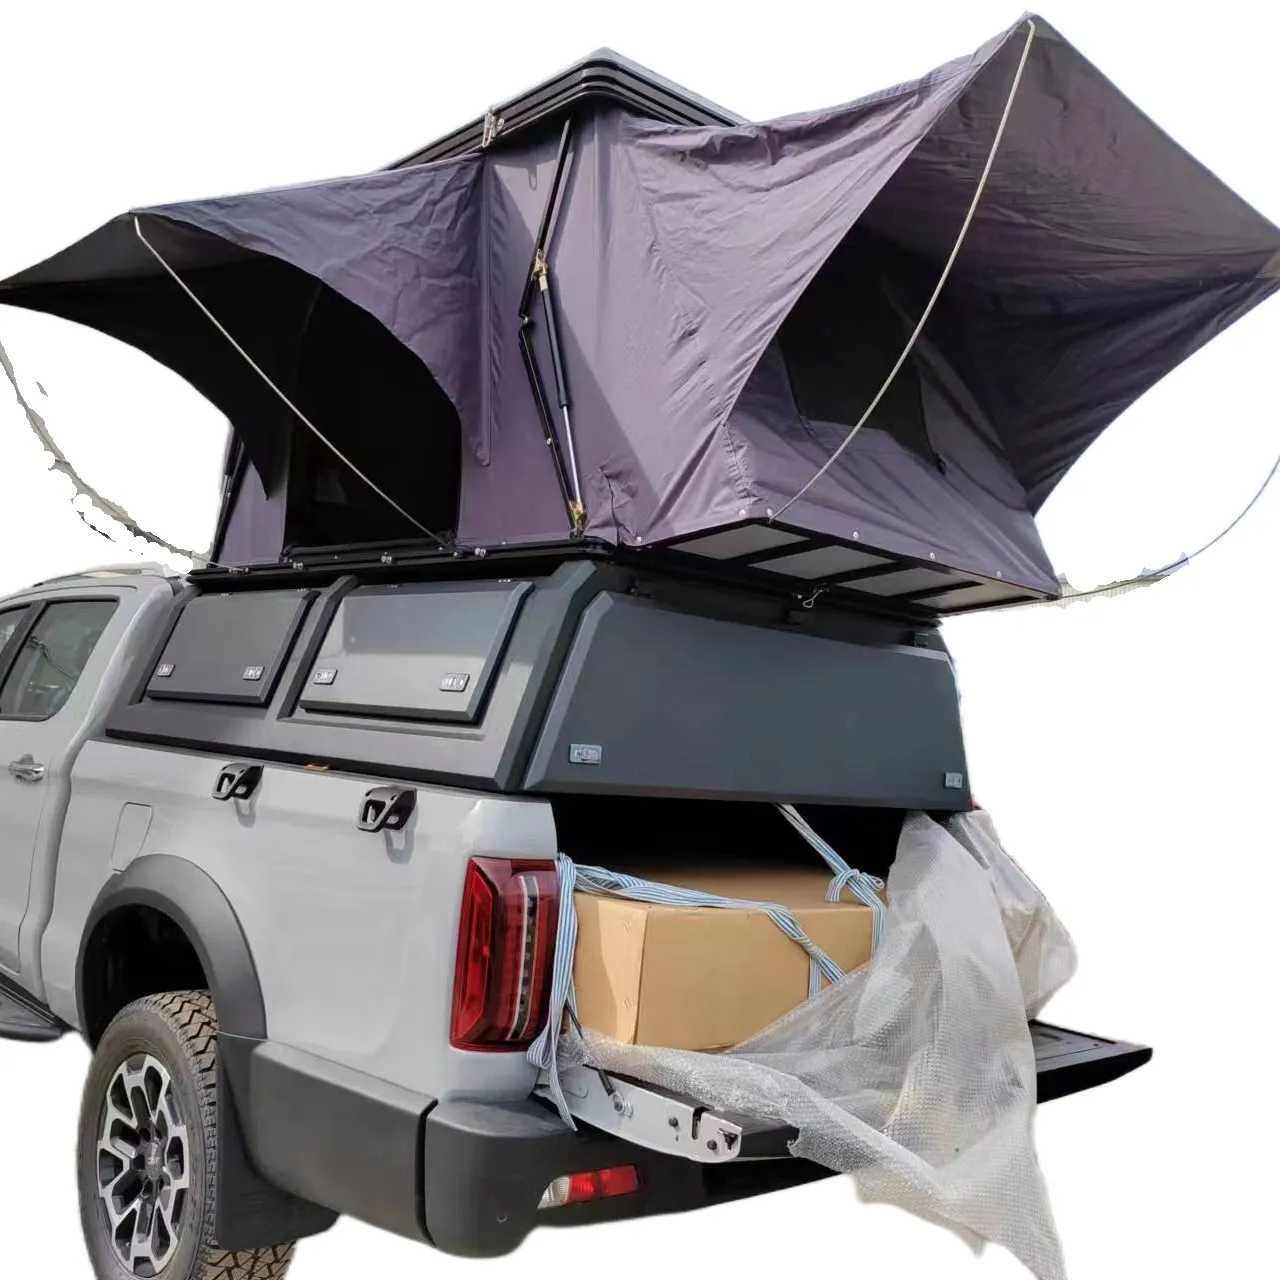 Tenda da tetto in alluminio con guscio rigido tenda da tetto tenda da tetto portatile pieghevole su auto pickup